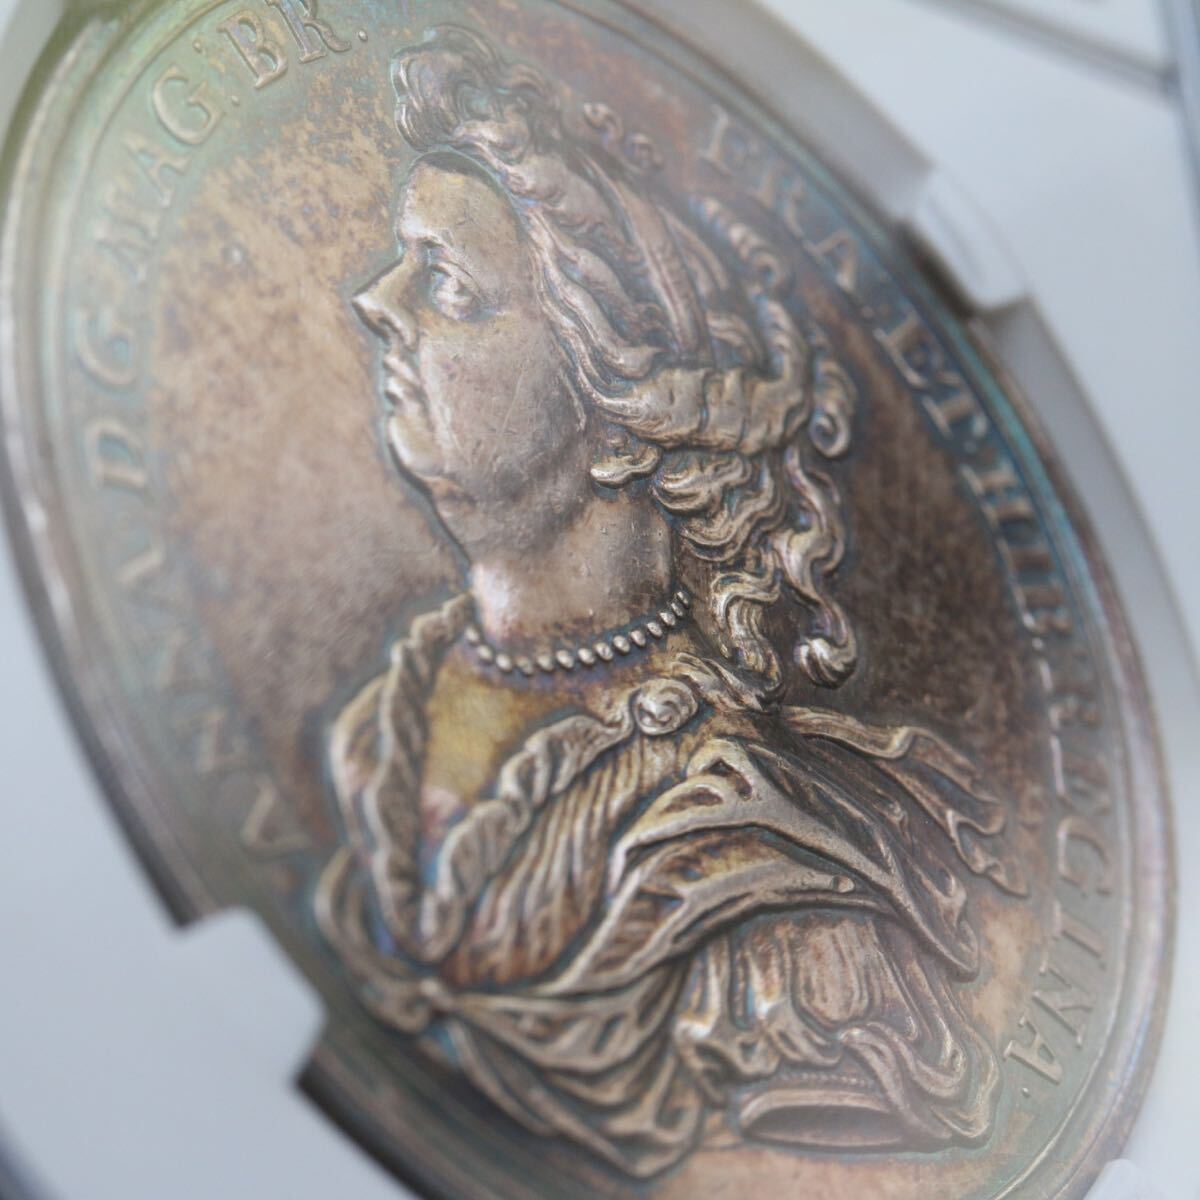 アン女王　ジョージ王配　銀メダル　NGC　1702年　イギリス　英国　アンティーク コイン　イングランド　金貨　銀貨　銅貨 